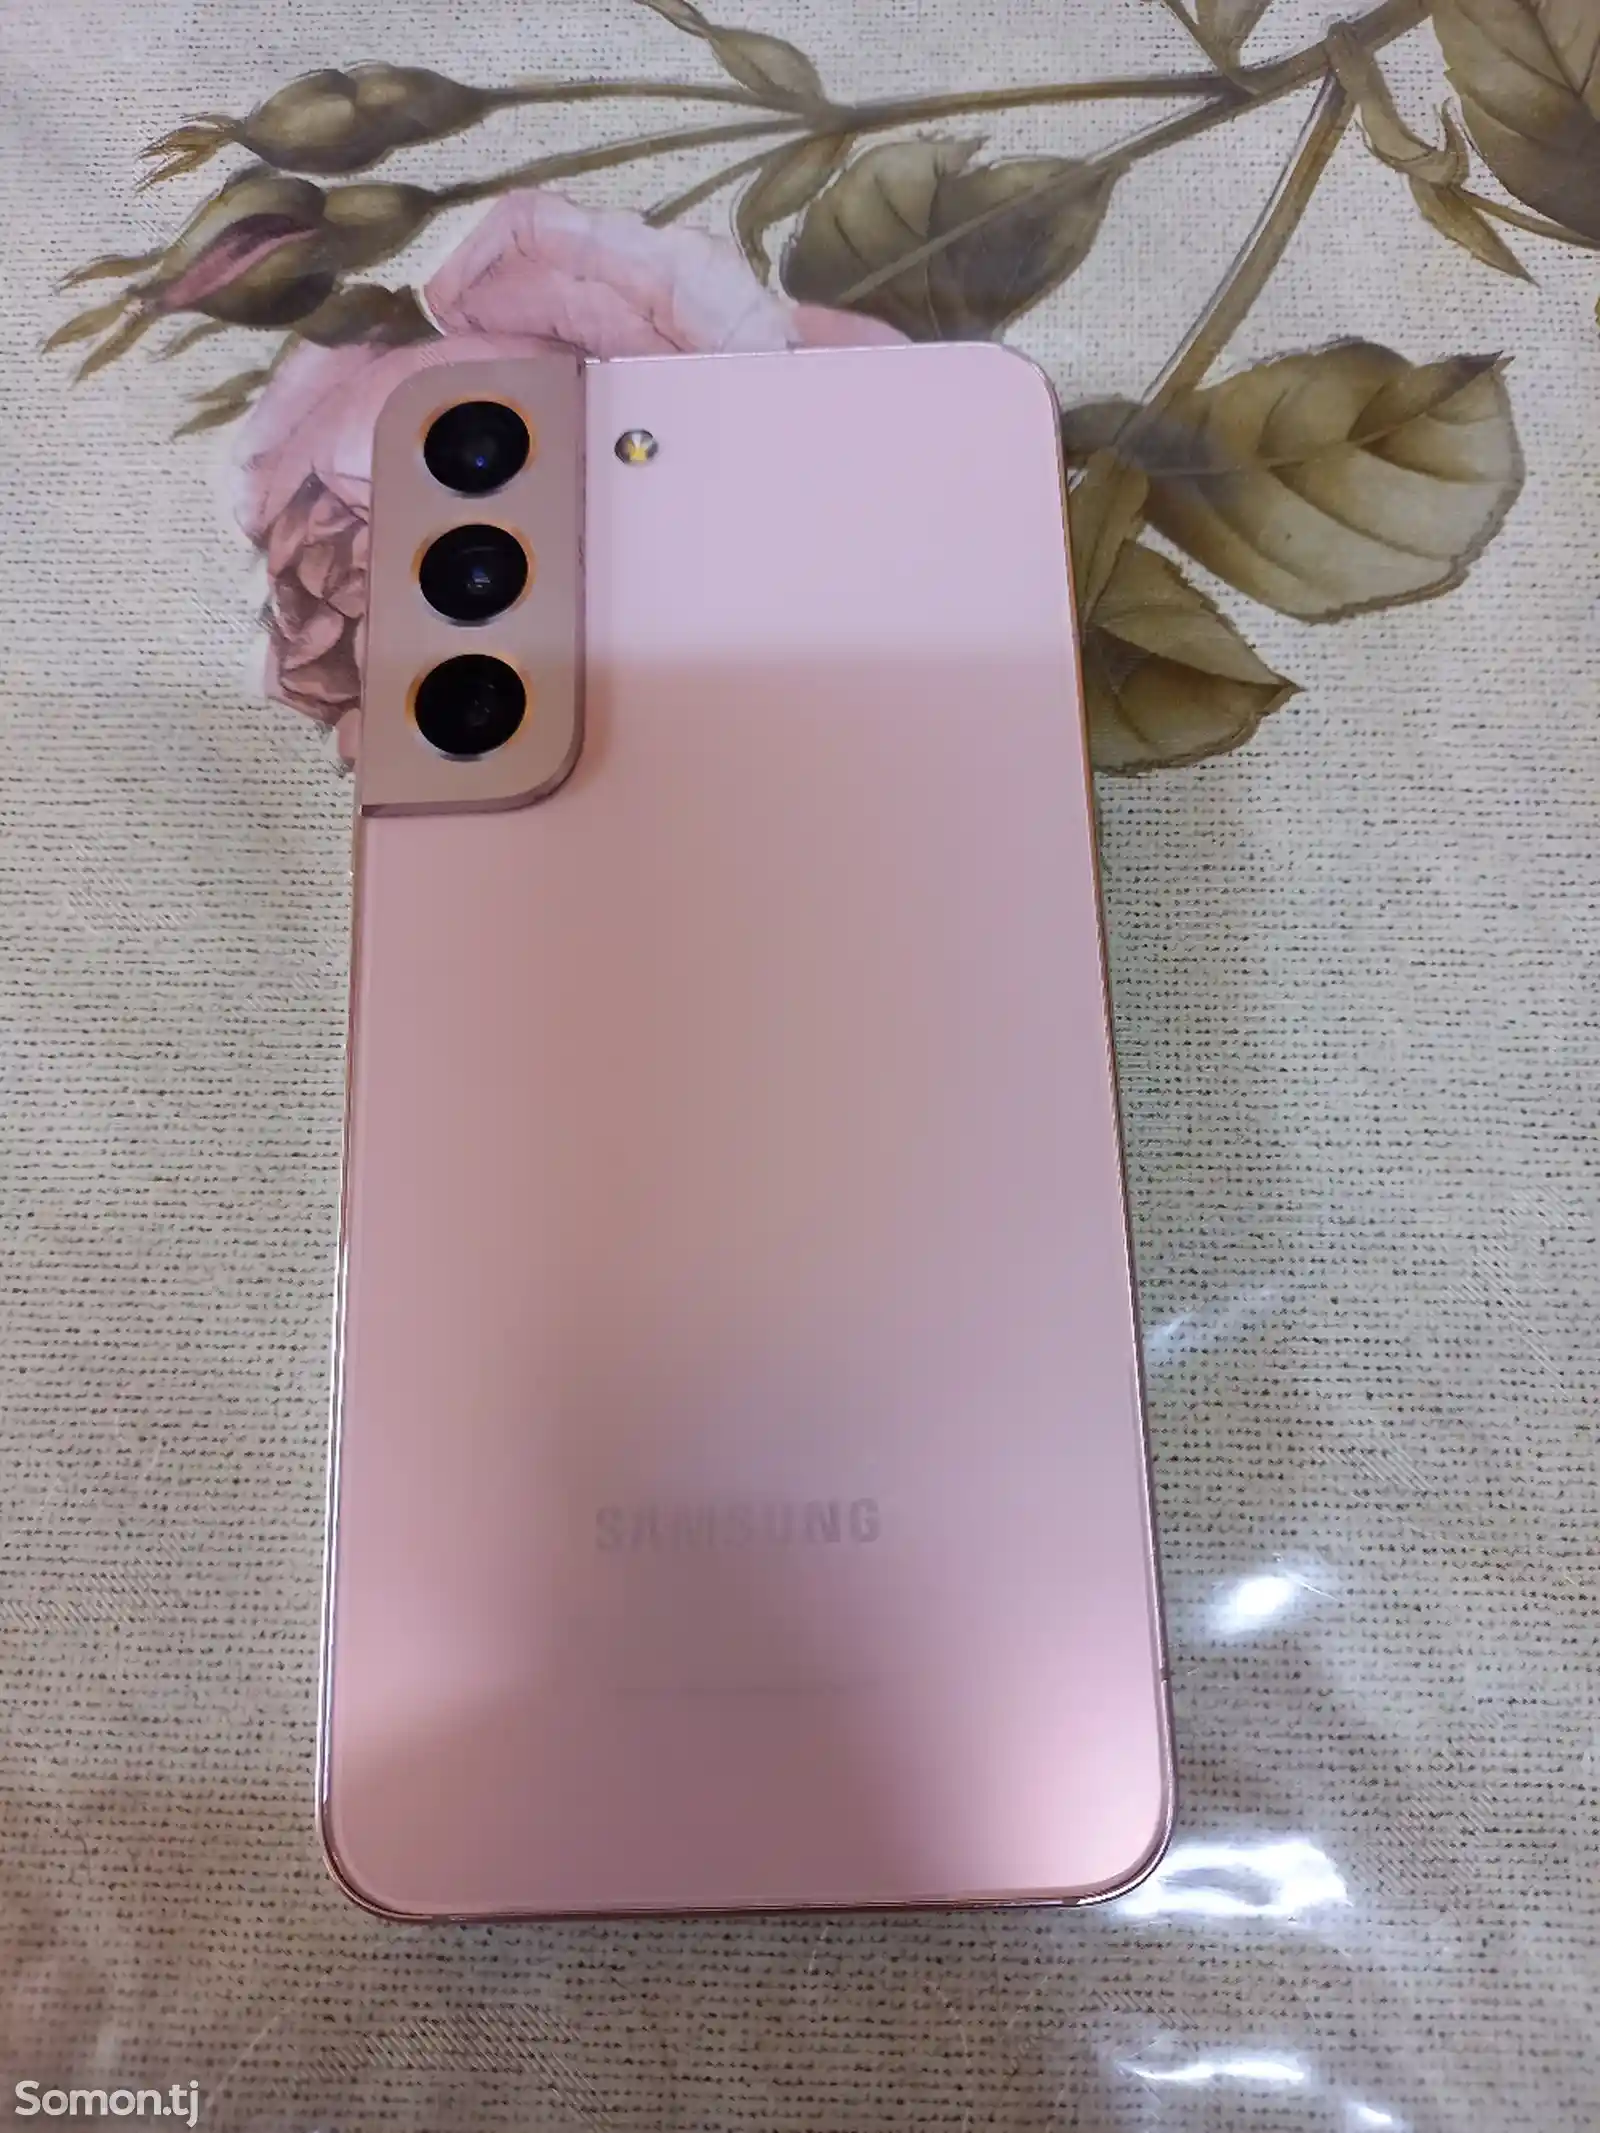 Samsung Galaxy S22-5